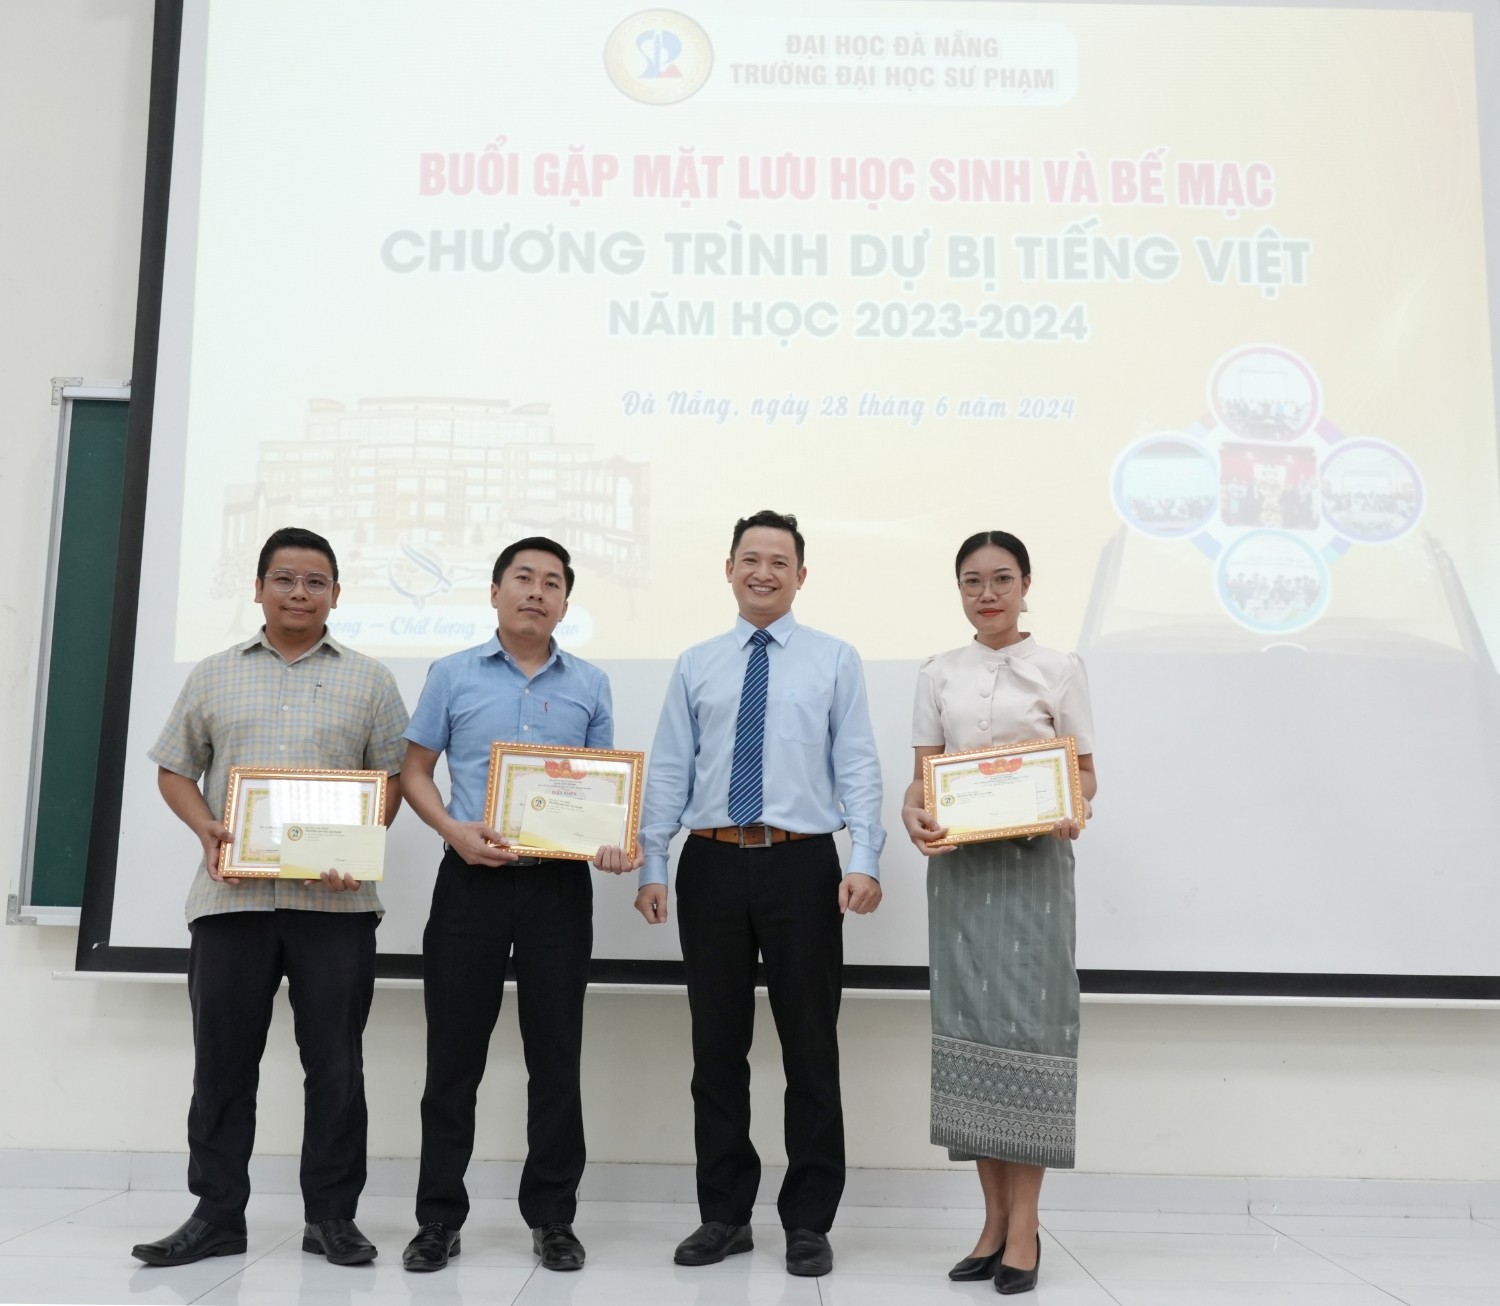 PGS.TS Nguyễn Văn Hiếu, Phó Hiệu trưởng Nhà trường trao giấy khen cho các lưu học sinh.